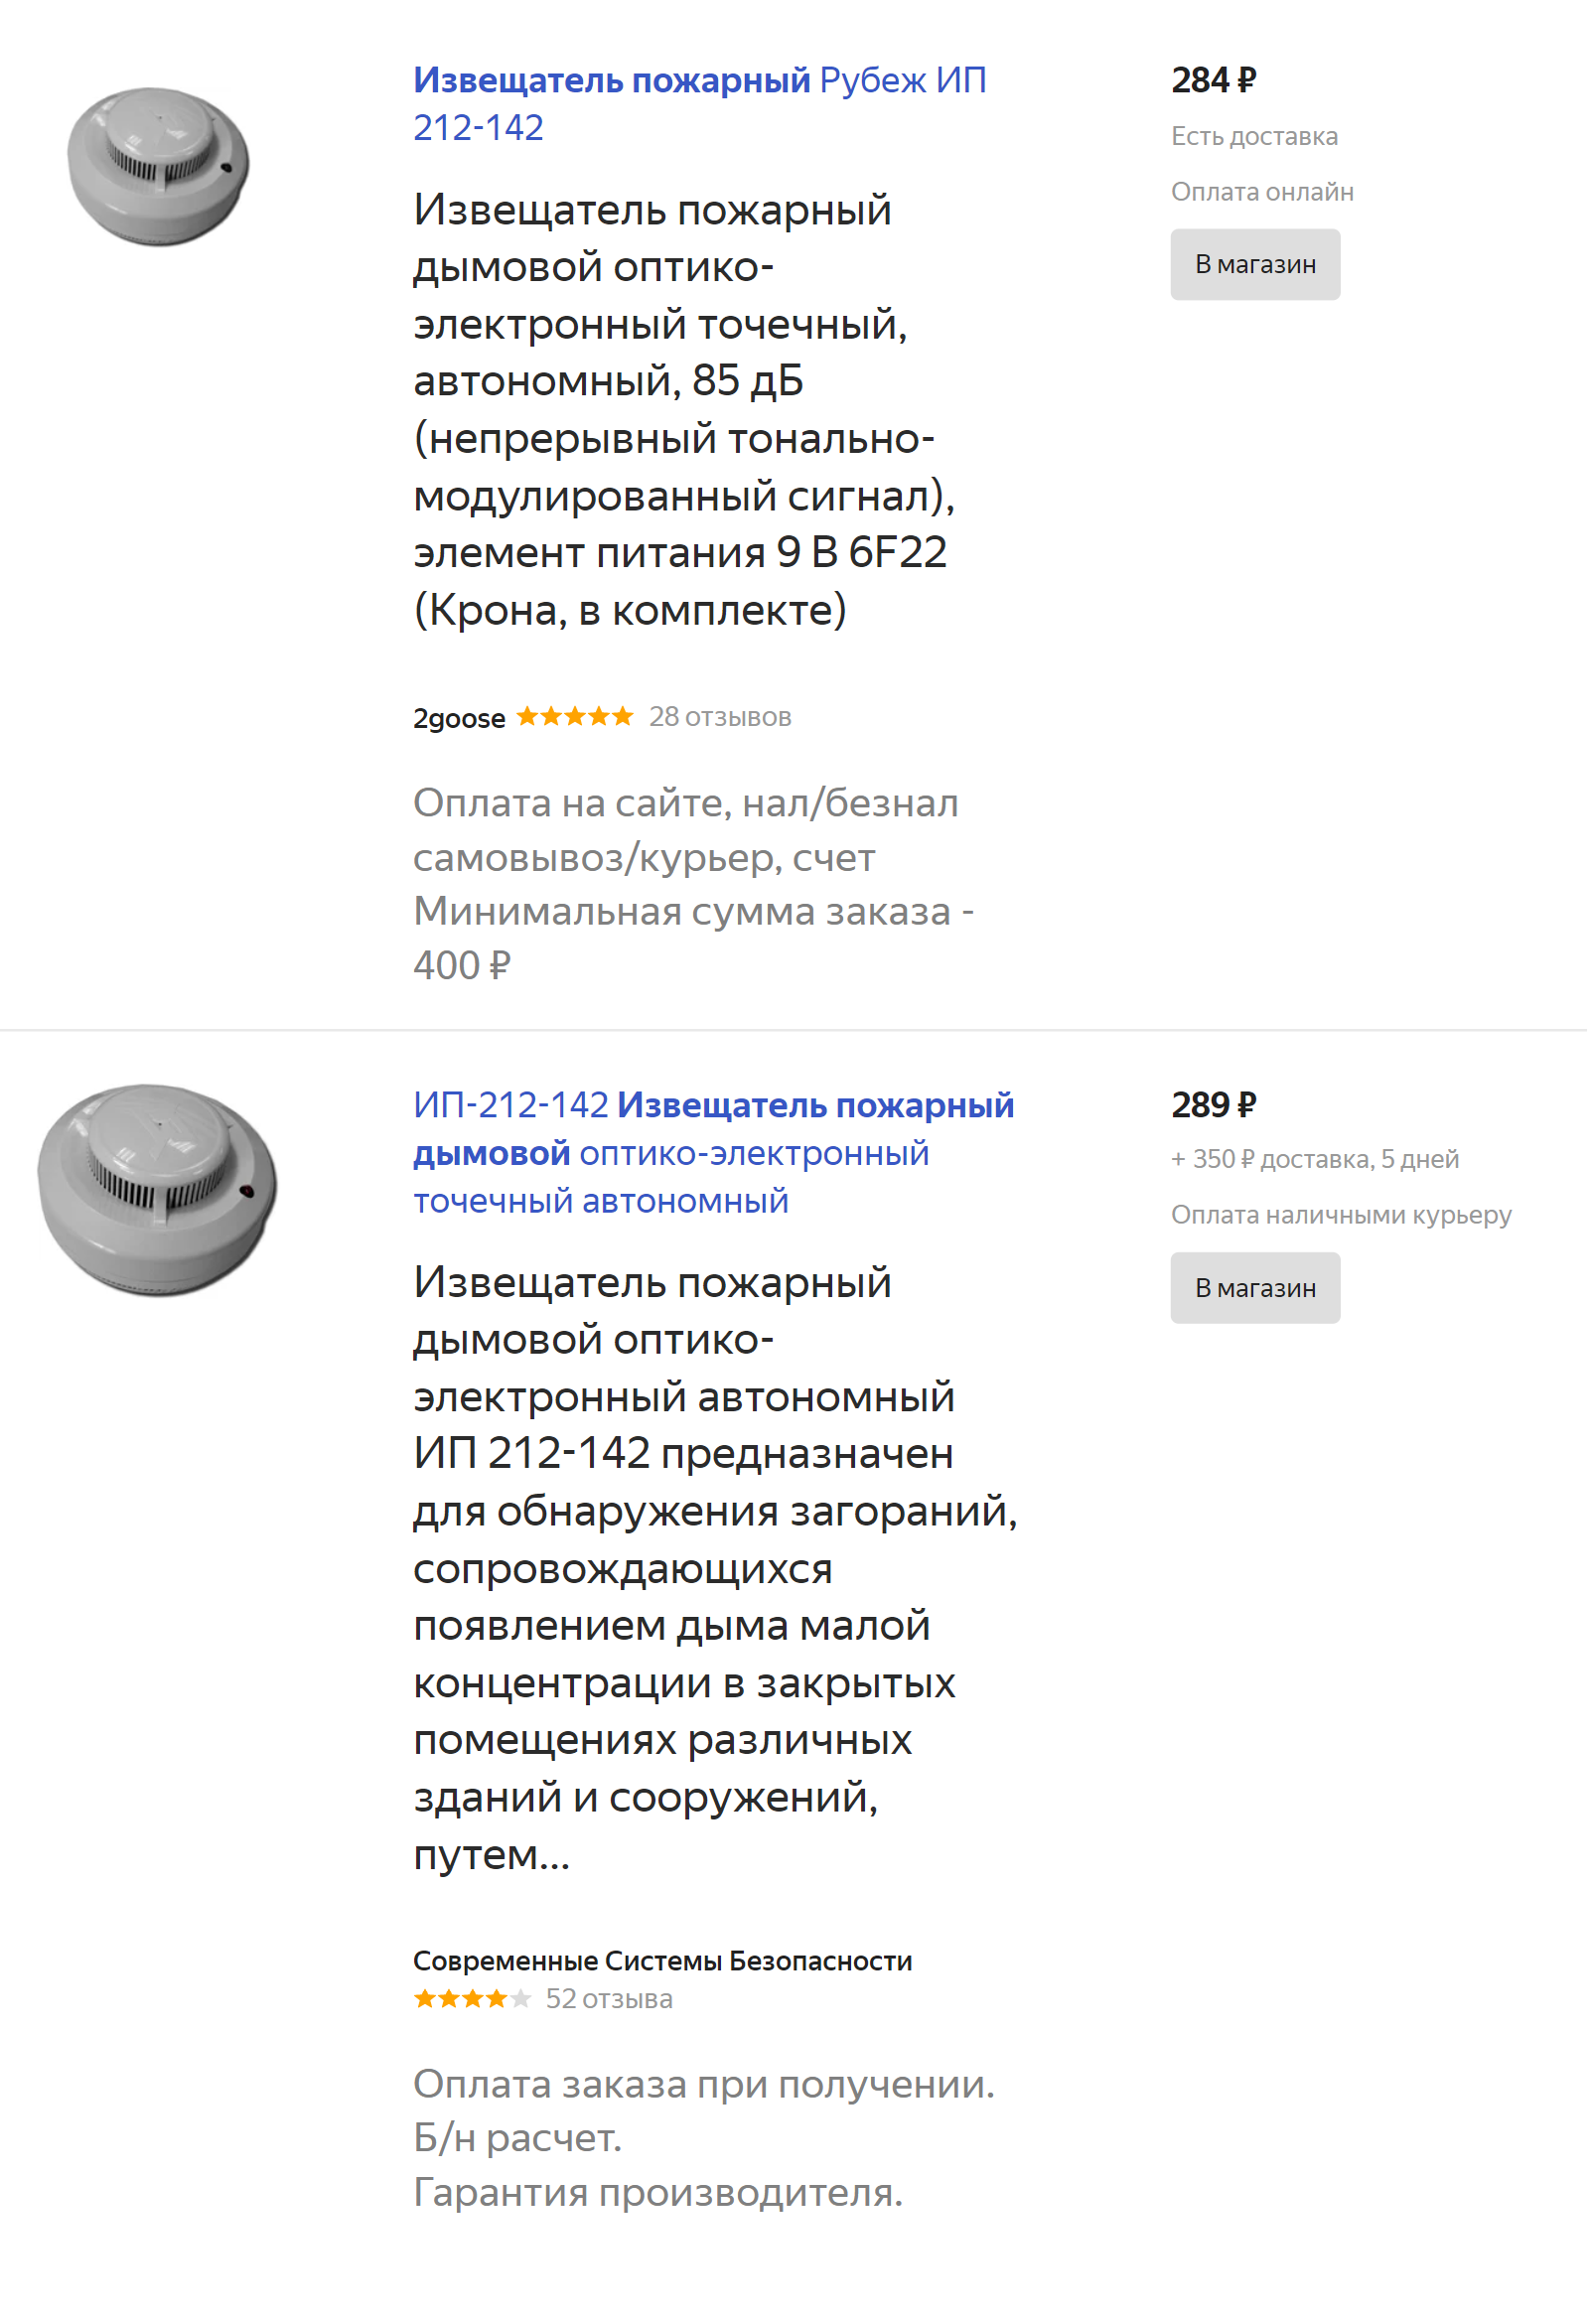 Цены на оптико-электронные дымовые извещатели на «Яндекс-маркете». Дымовые извещатели — самый популярный вариант для квартир, но в их использовании много нюансов